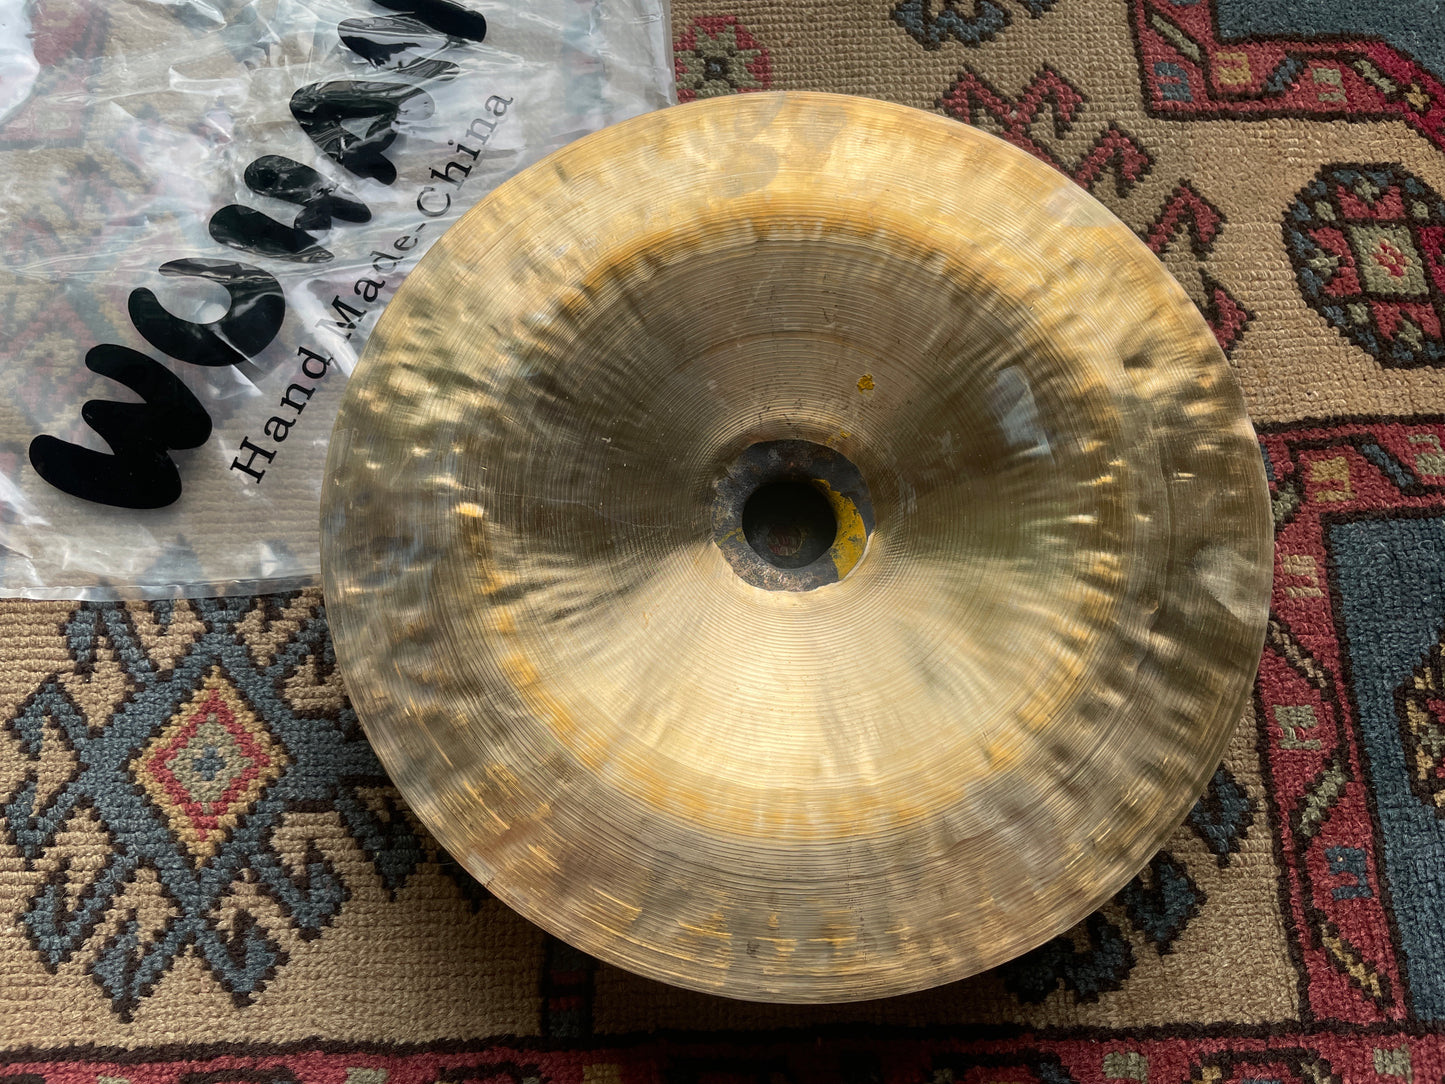 12" Wuhan China Cymbal WU104-12